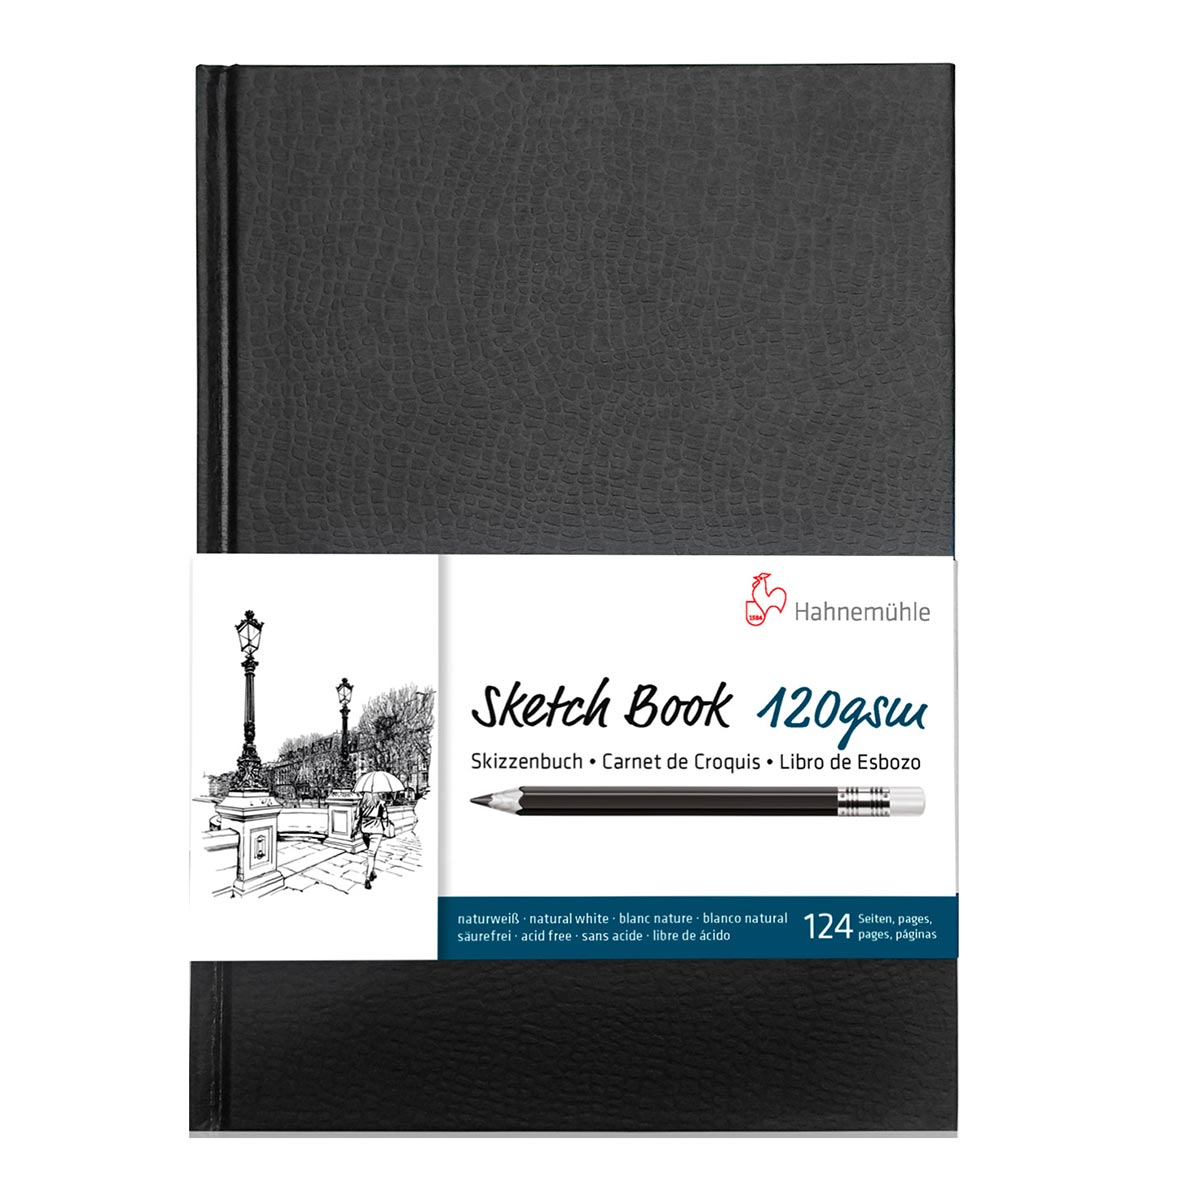 Hahnemuhle - Hardback Sketchbook 120gsm 62 Sheets A4